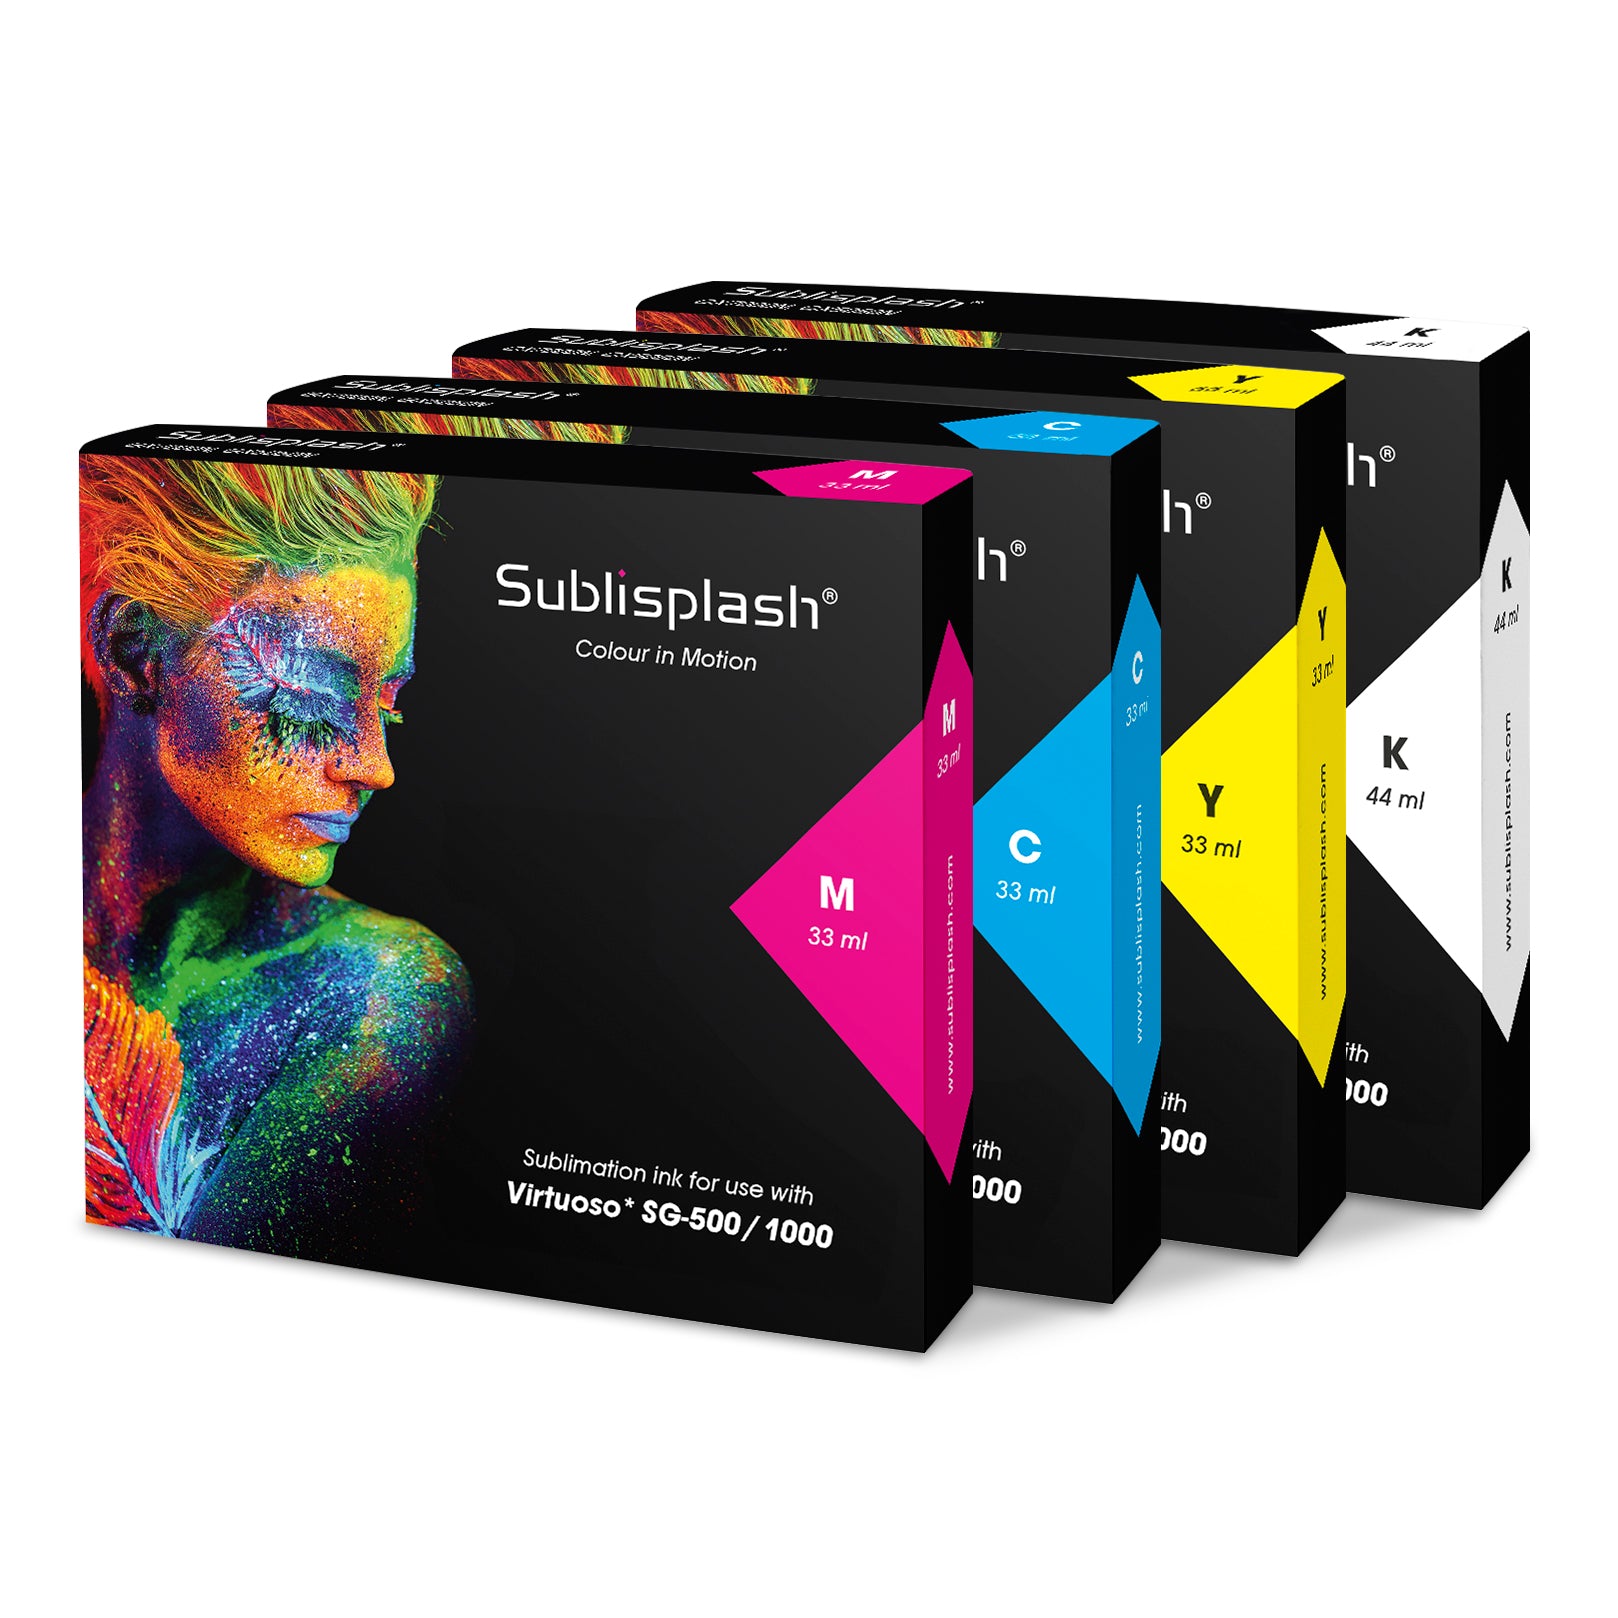 Sublisplash SG500 | SG1000 Sublimation Ink